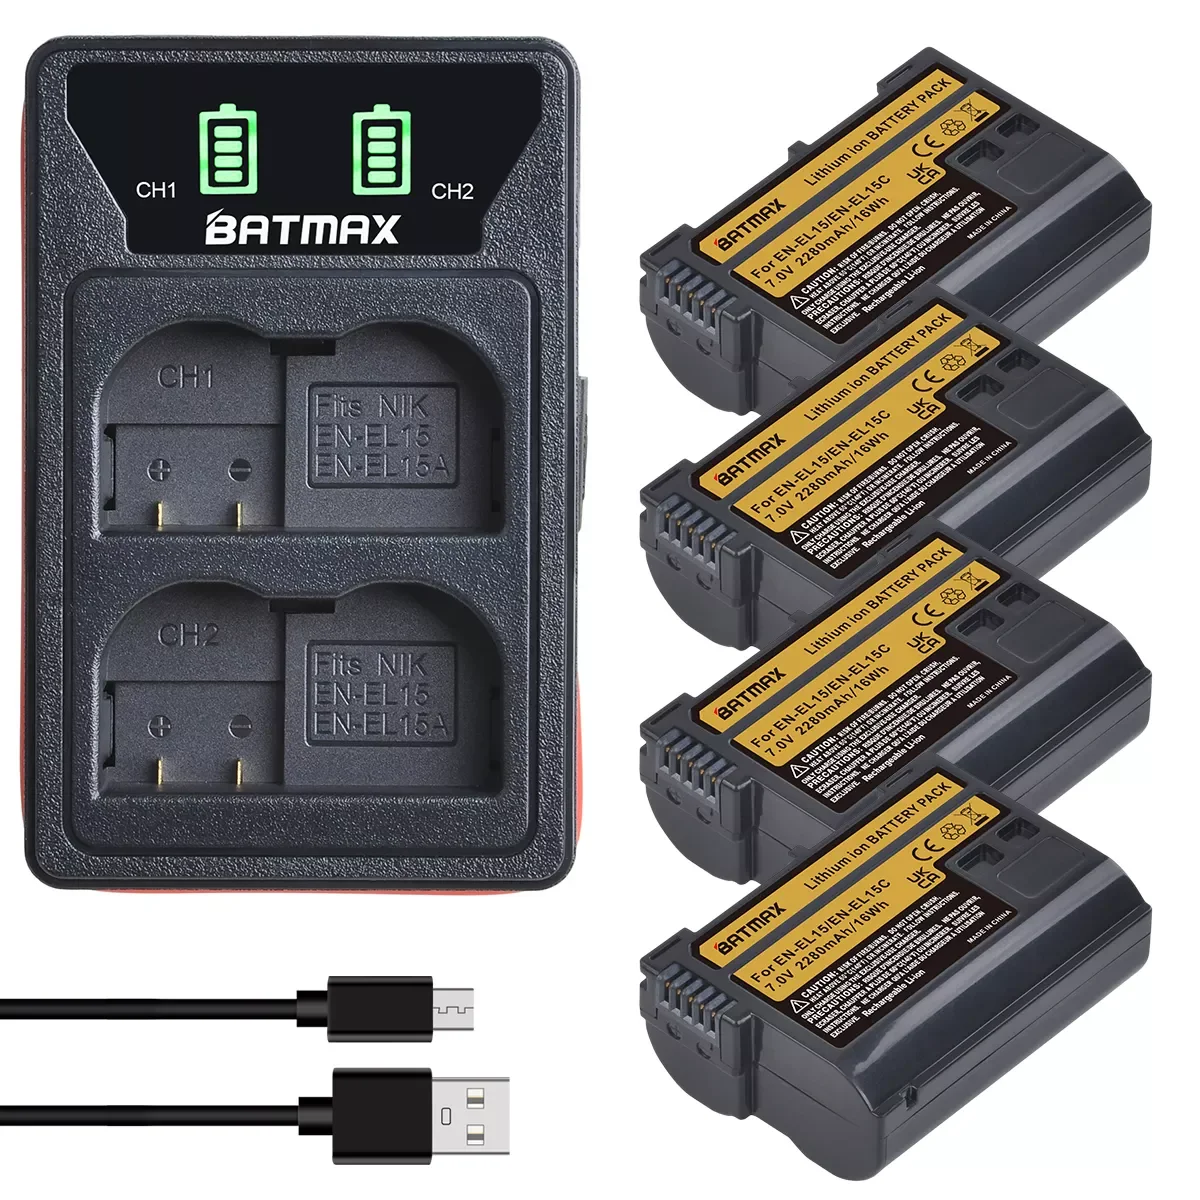 Batmax 2280mAh EN-EL15C EN-EL15 Battery+LED USB Dual Charger for Nikon Z5,Z6,Z6 II,Z7,Z7II D600 D610 D600E D800 D810 D800E D810